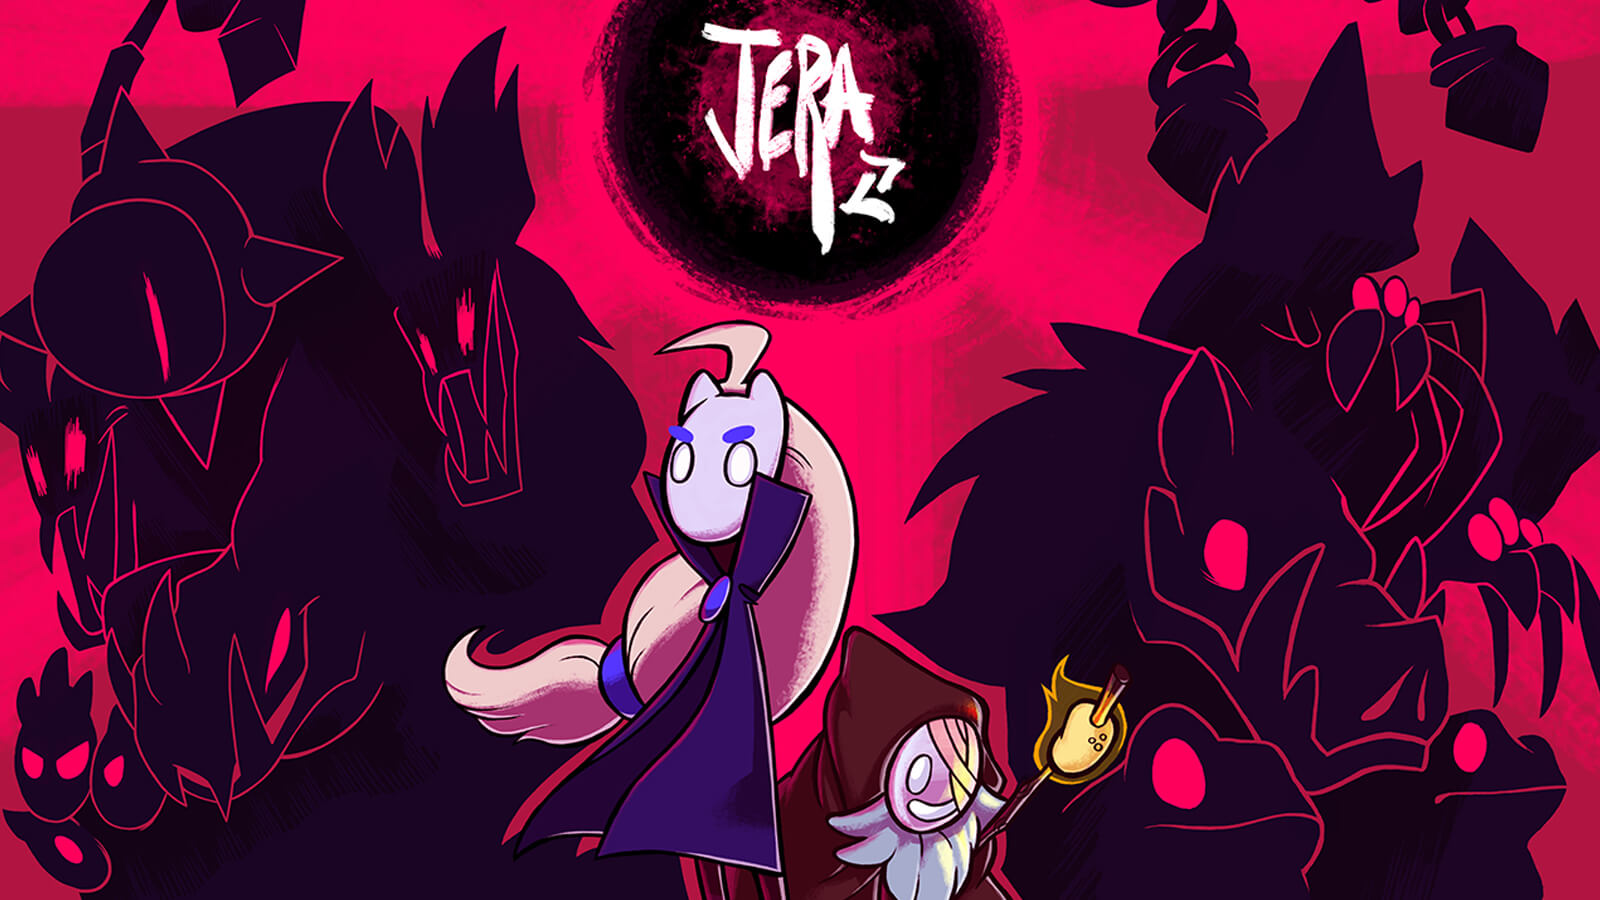 La pantalla de título de Jera, con dos personajes principales y siluetas de monstruos detrás de ellos.